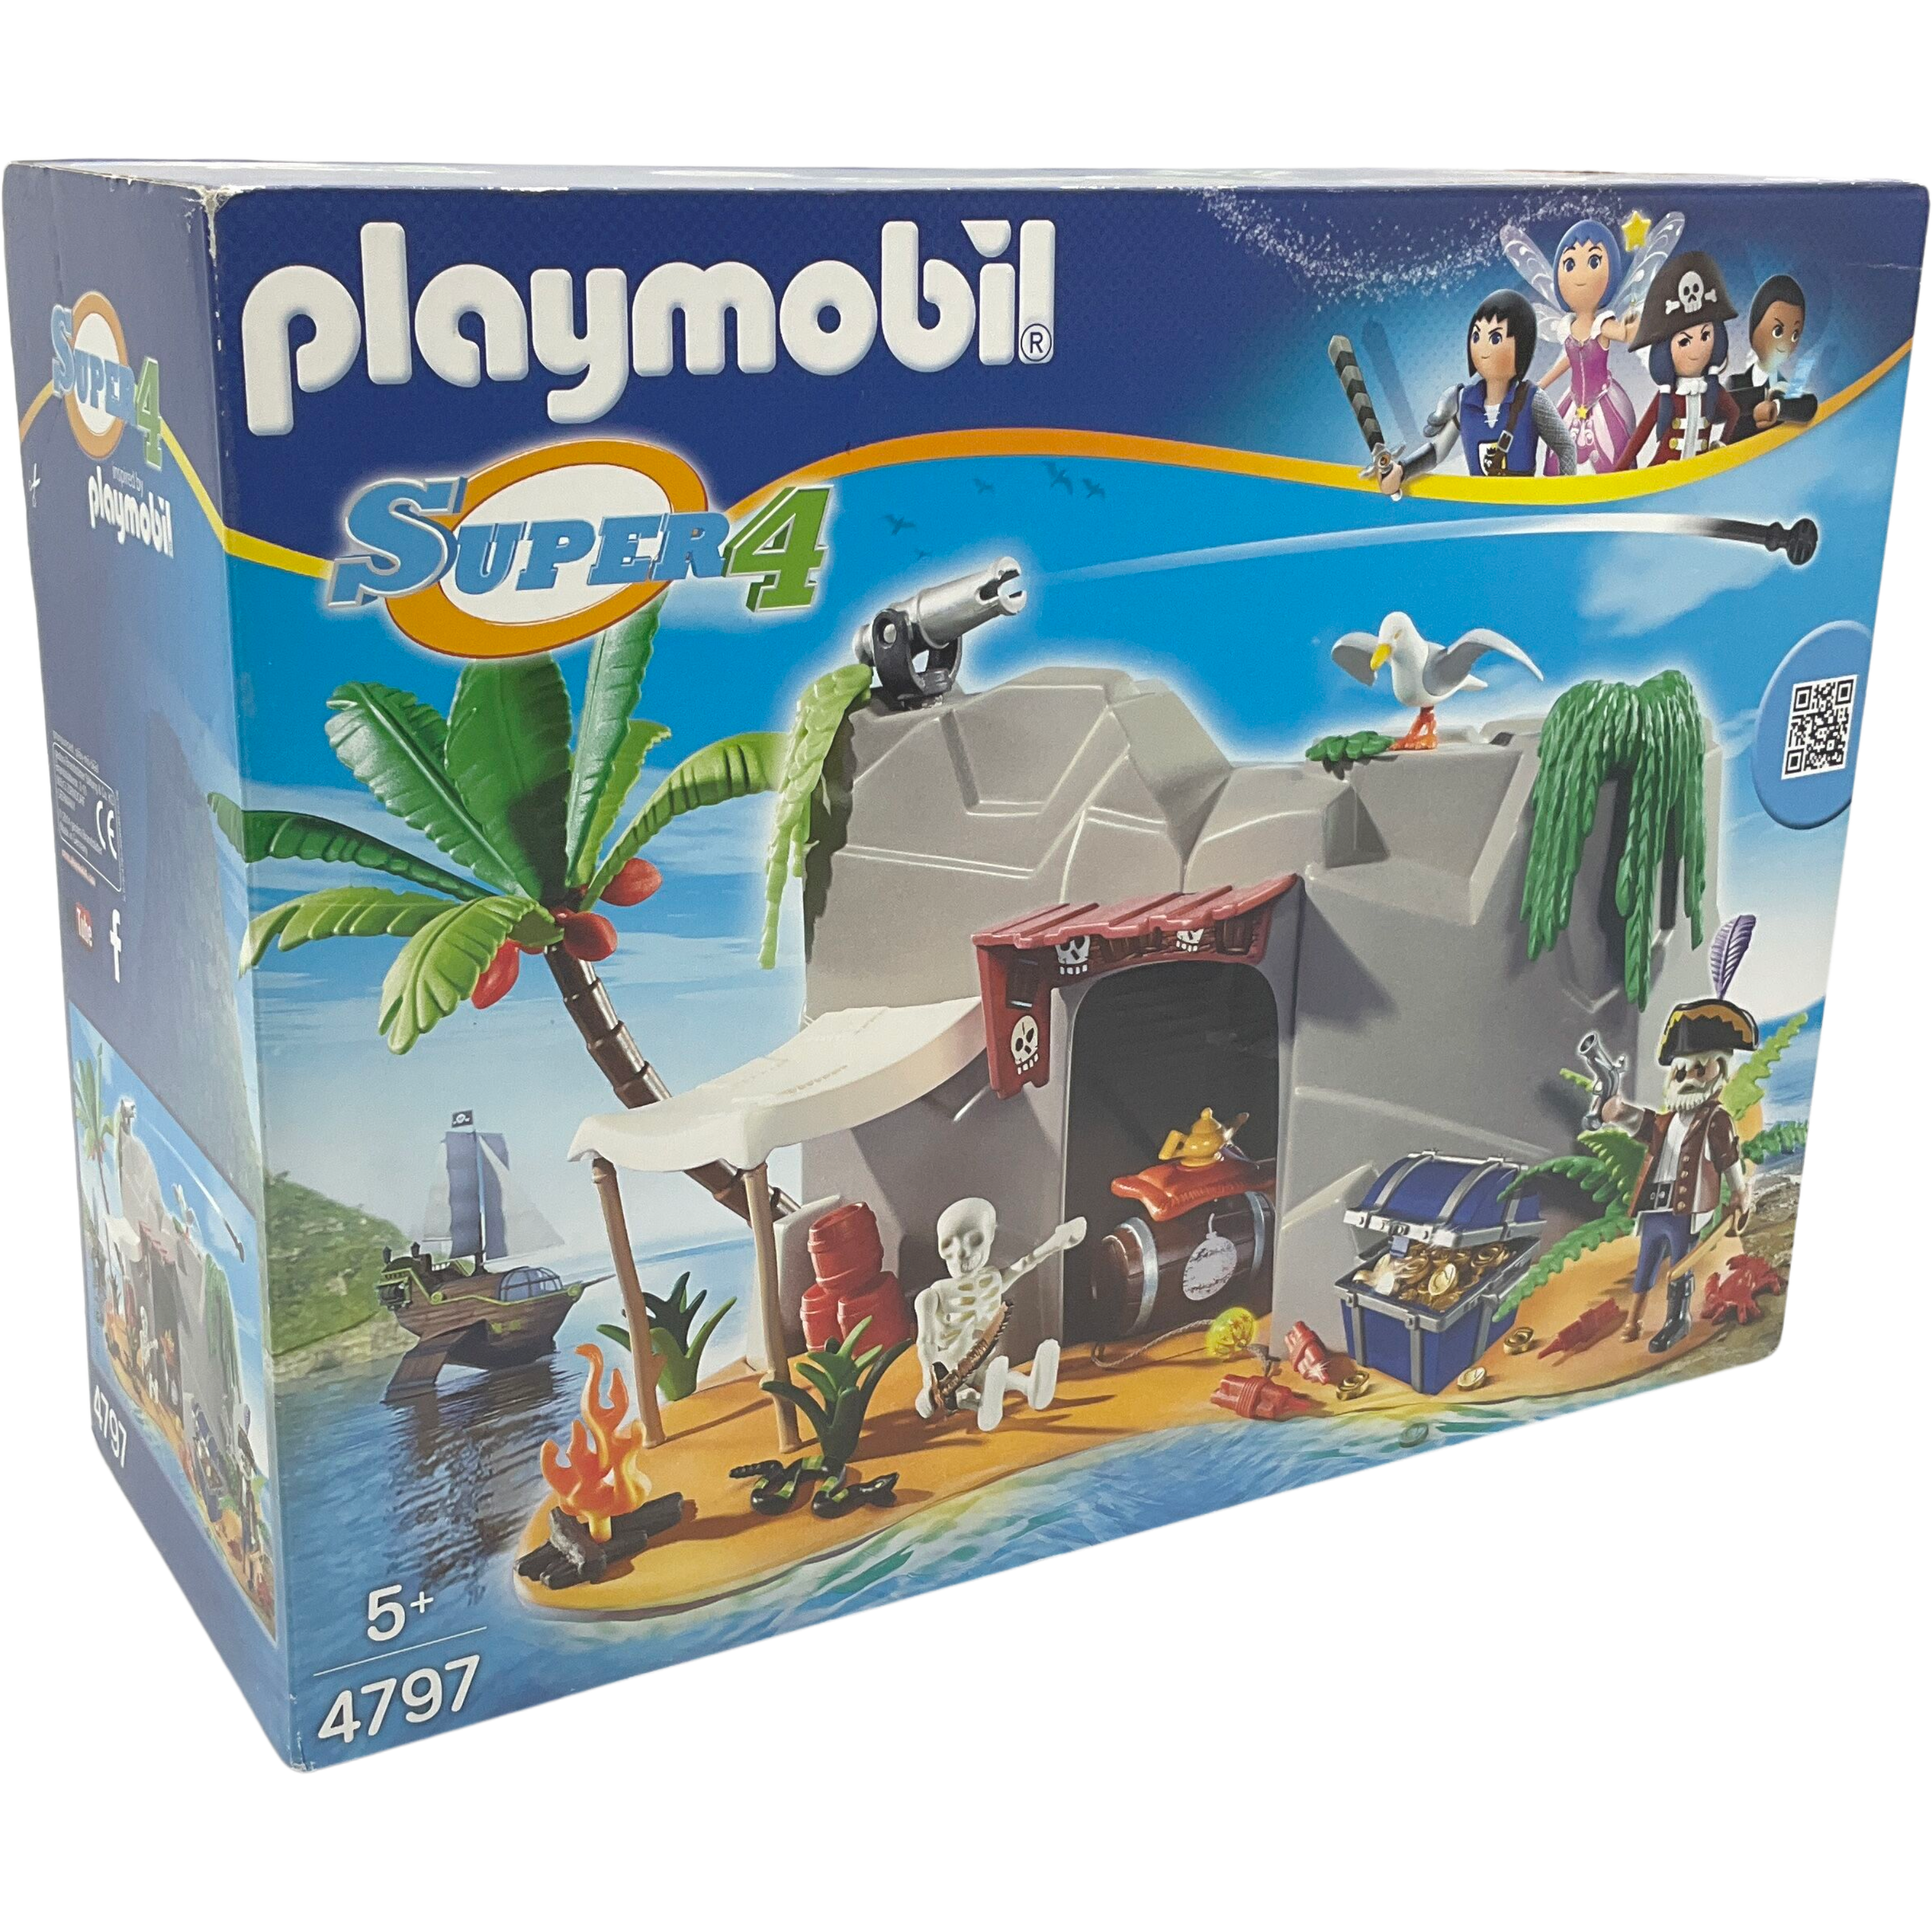 Puzzle 150 pièces et 1 figurine Playmobil Lutte pour le trésor du roi  Playmobil d'occasion - KIDIBAM